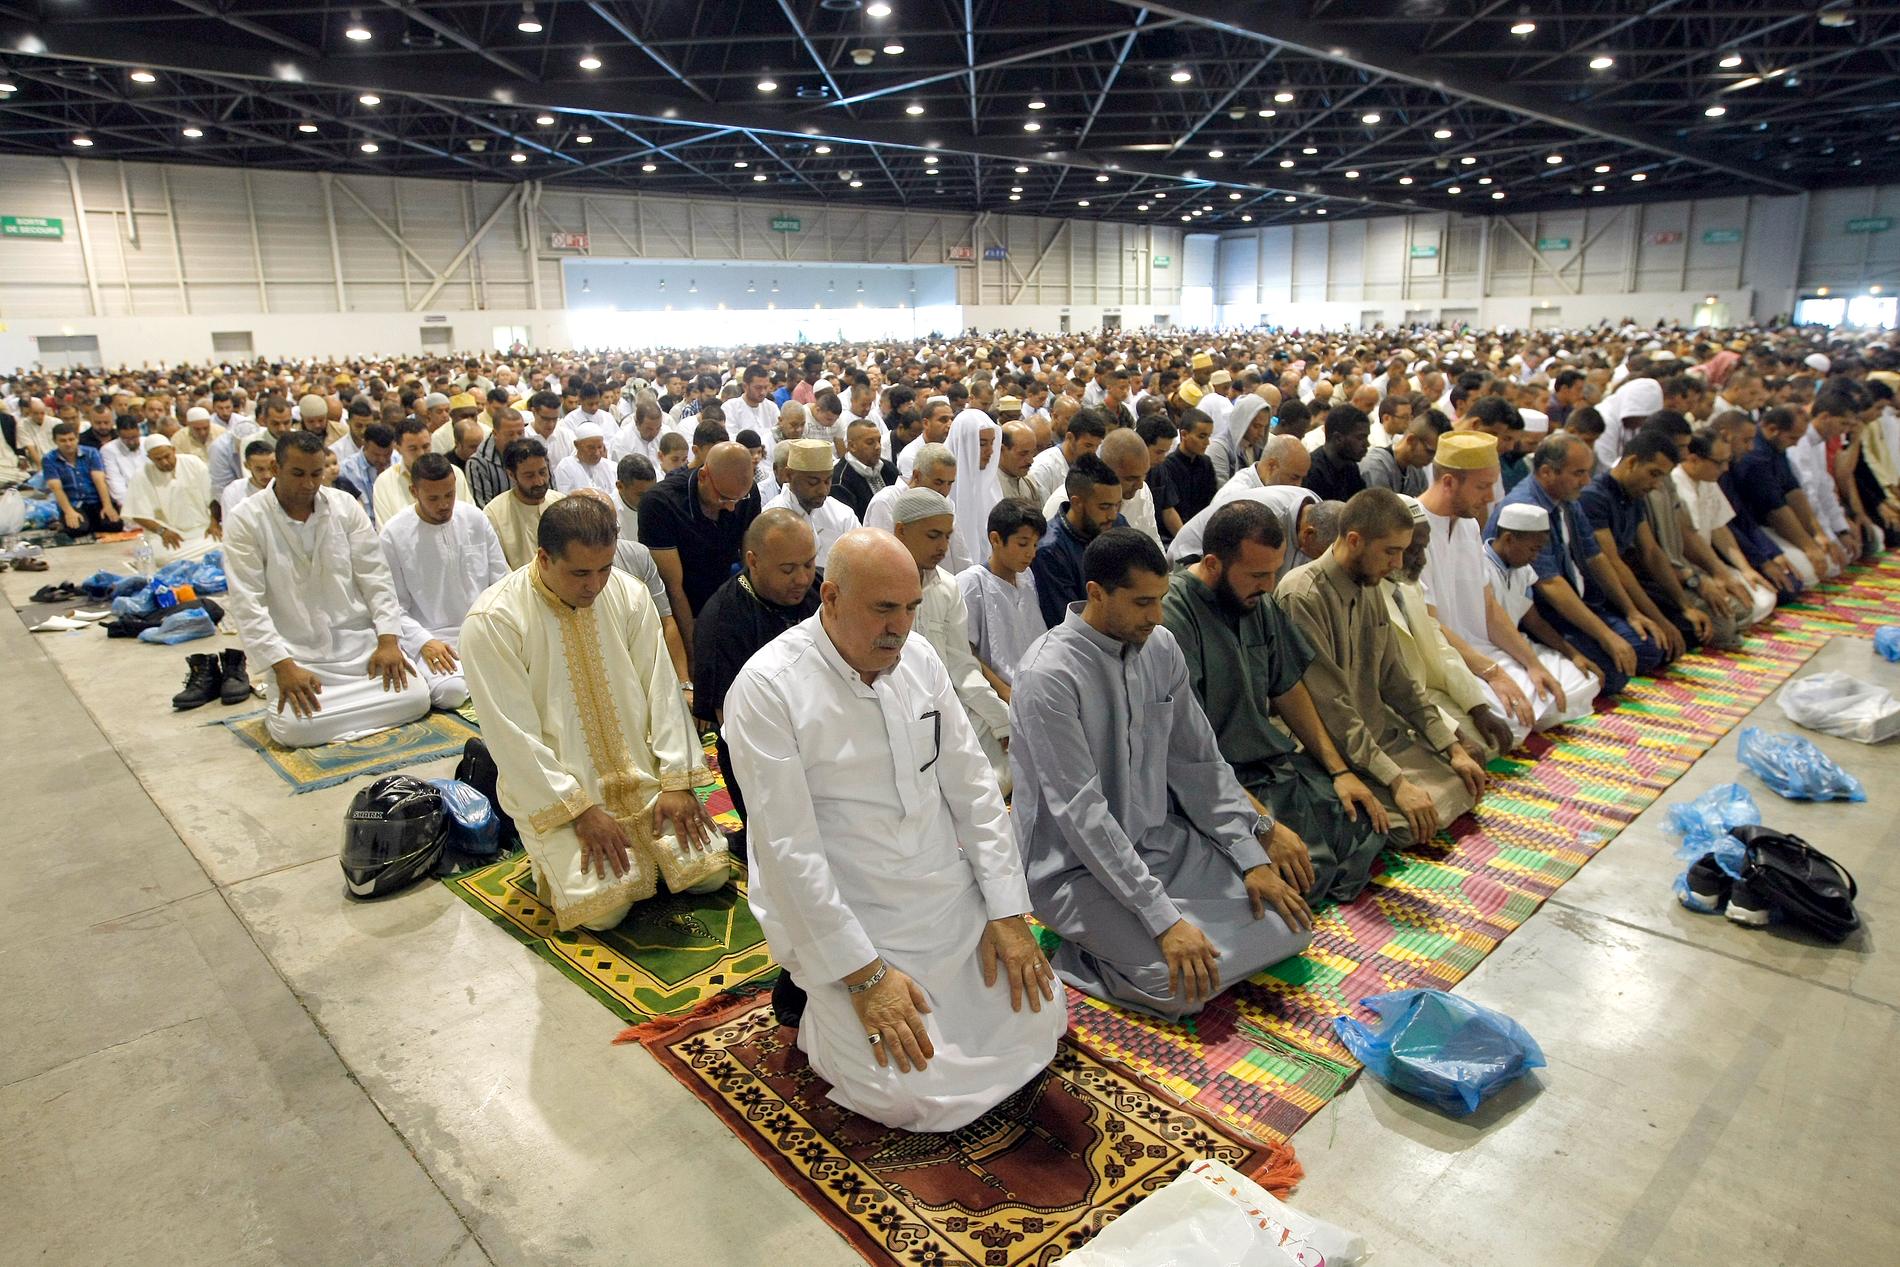 Frankrike lättar på reglerna för religiösa sammankomster. Bilden tagen i samband med id al-fitr 2014 i Marseille.